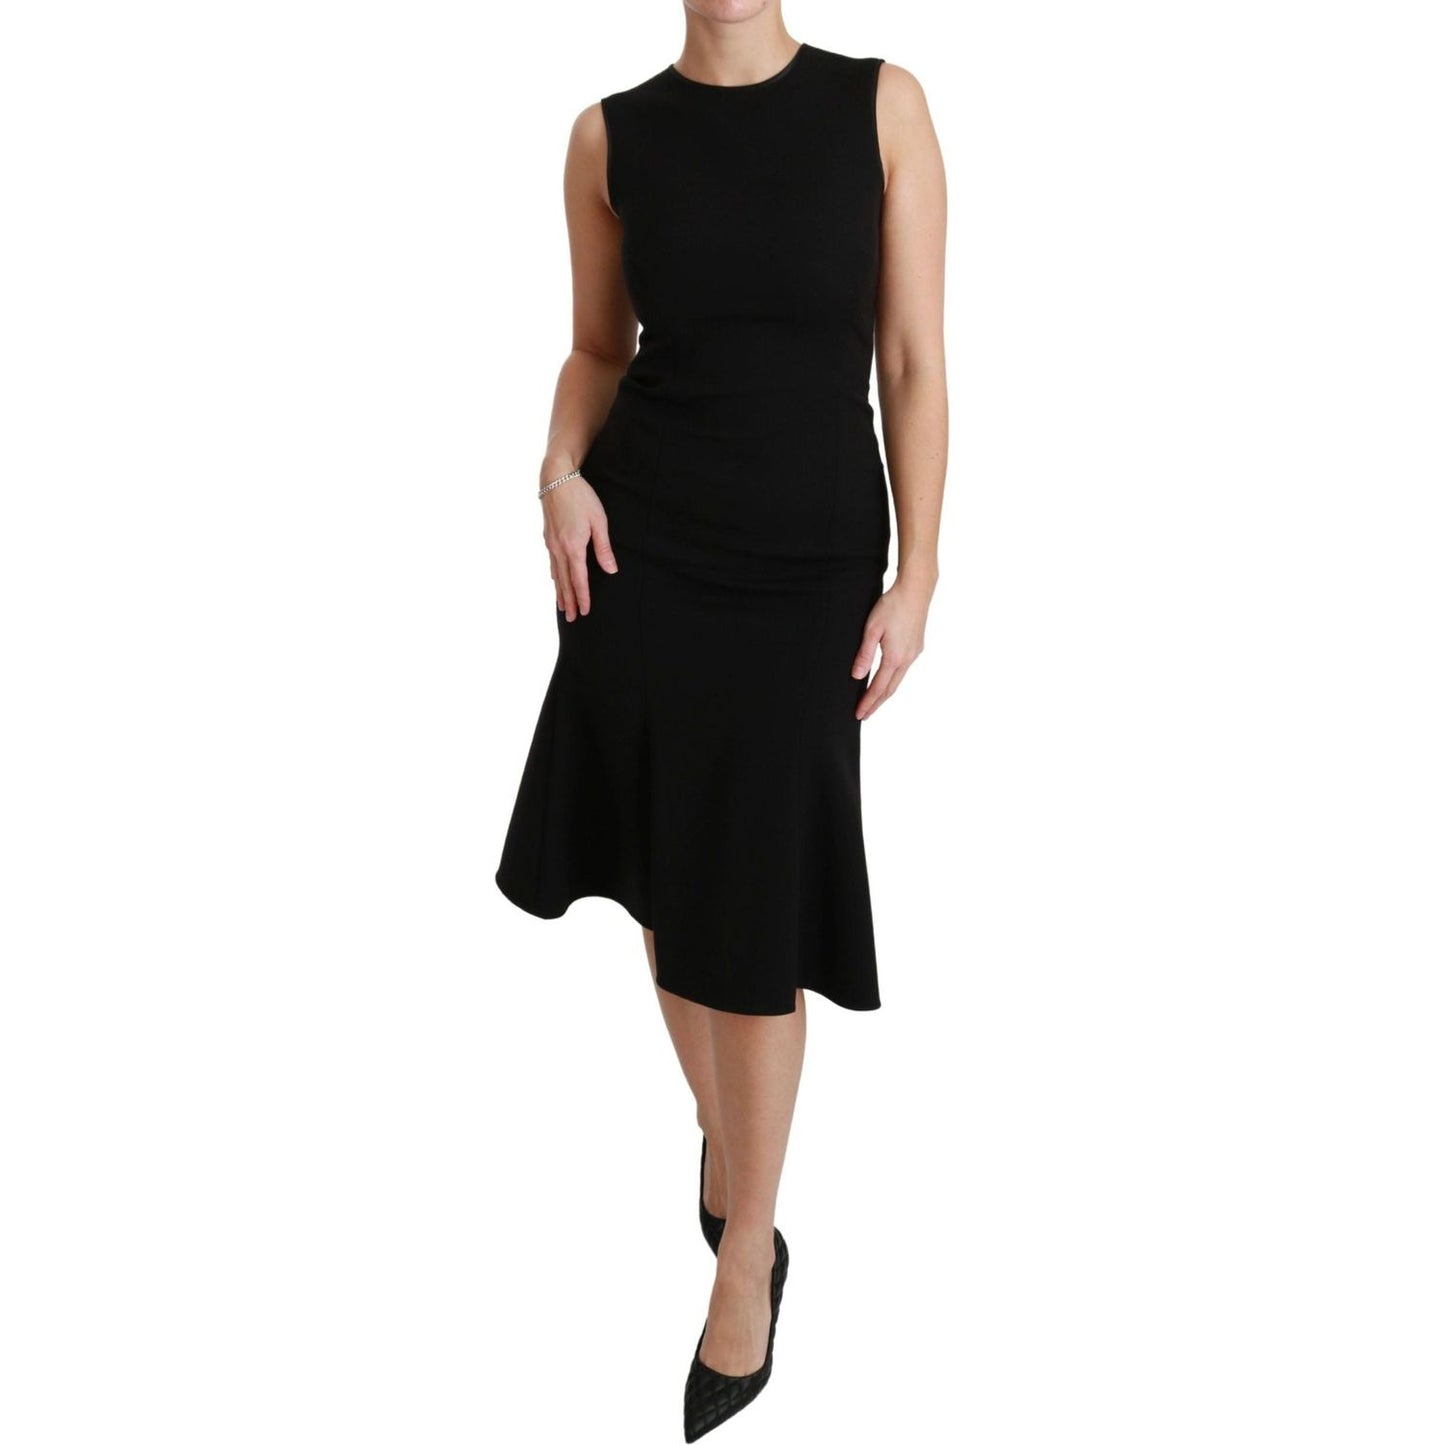 Dolce & Gabbana Elegant Black Fit Flare Wool Blend Dress WOMAN DRESSES black-fit-flare-wool-stretch-sheath-dress IMG_6963-scaled-1cfafb79-2f3.jpg